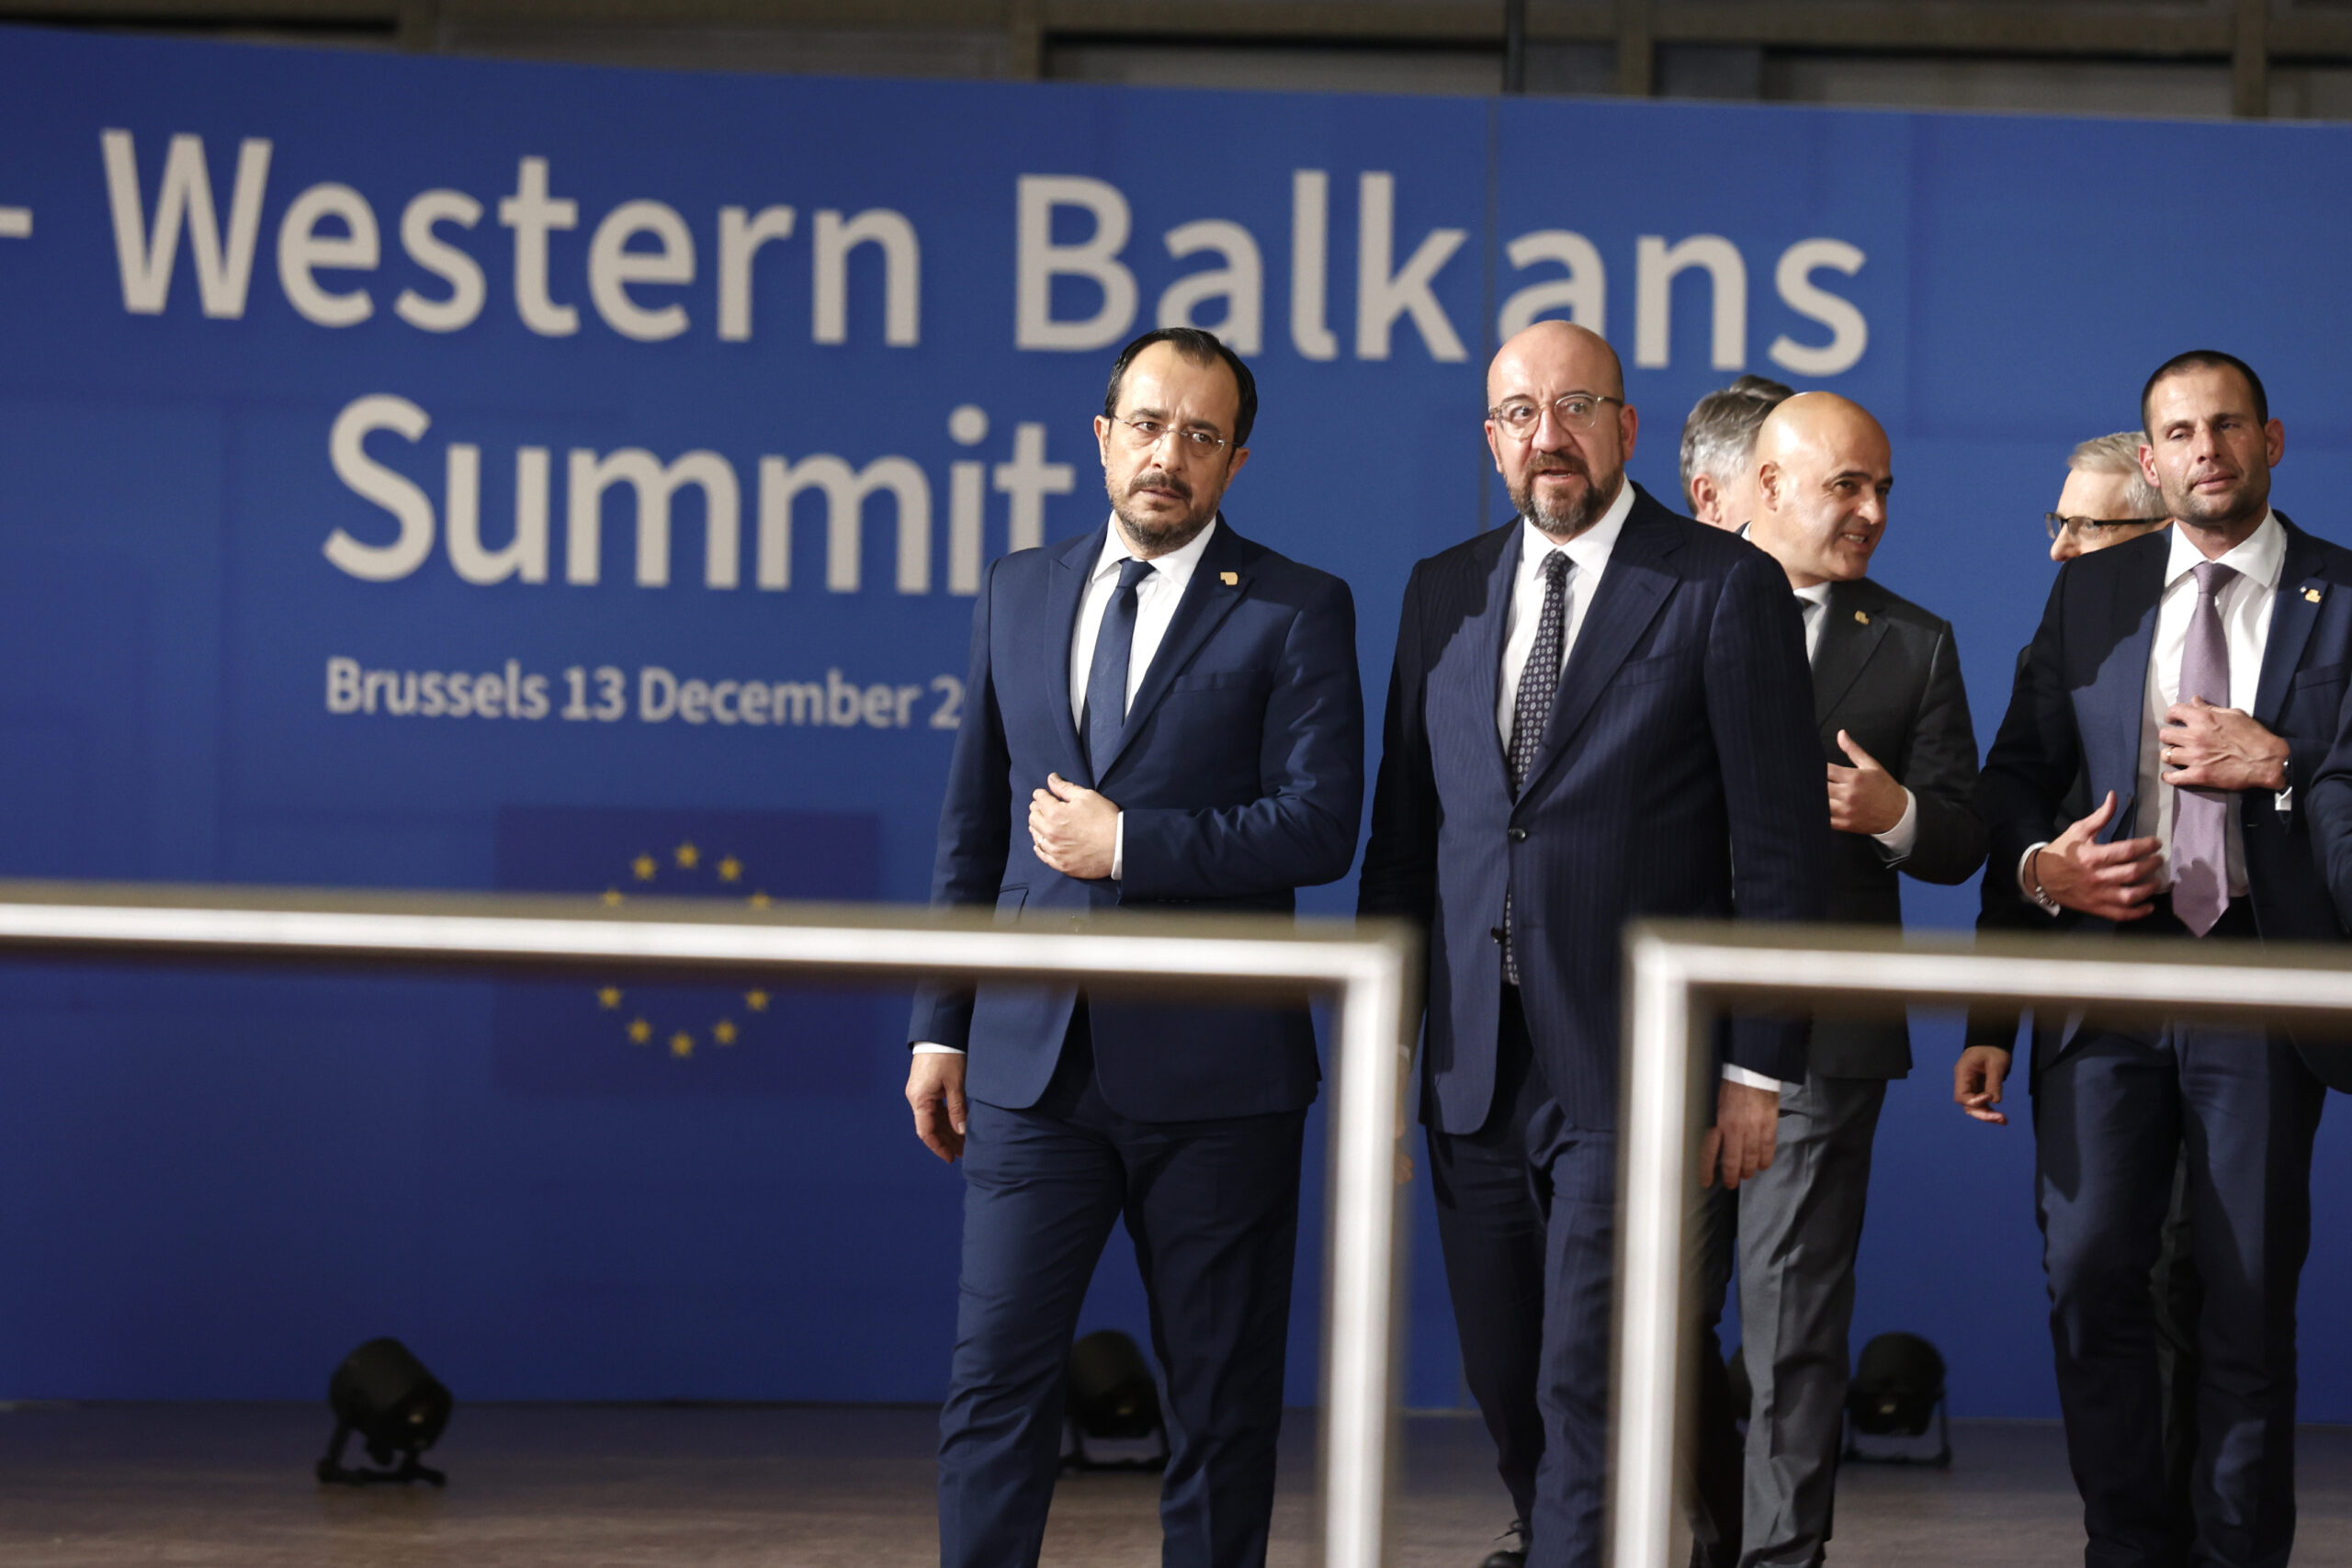 Σεβασμό στα δικαιώματα των μειονοτήτων ζητά η Σύνοδος ΕΕ – Δυτικών Βαλκανίων